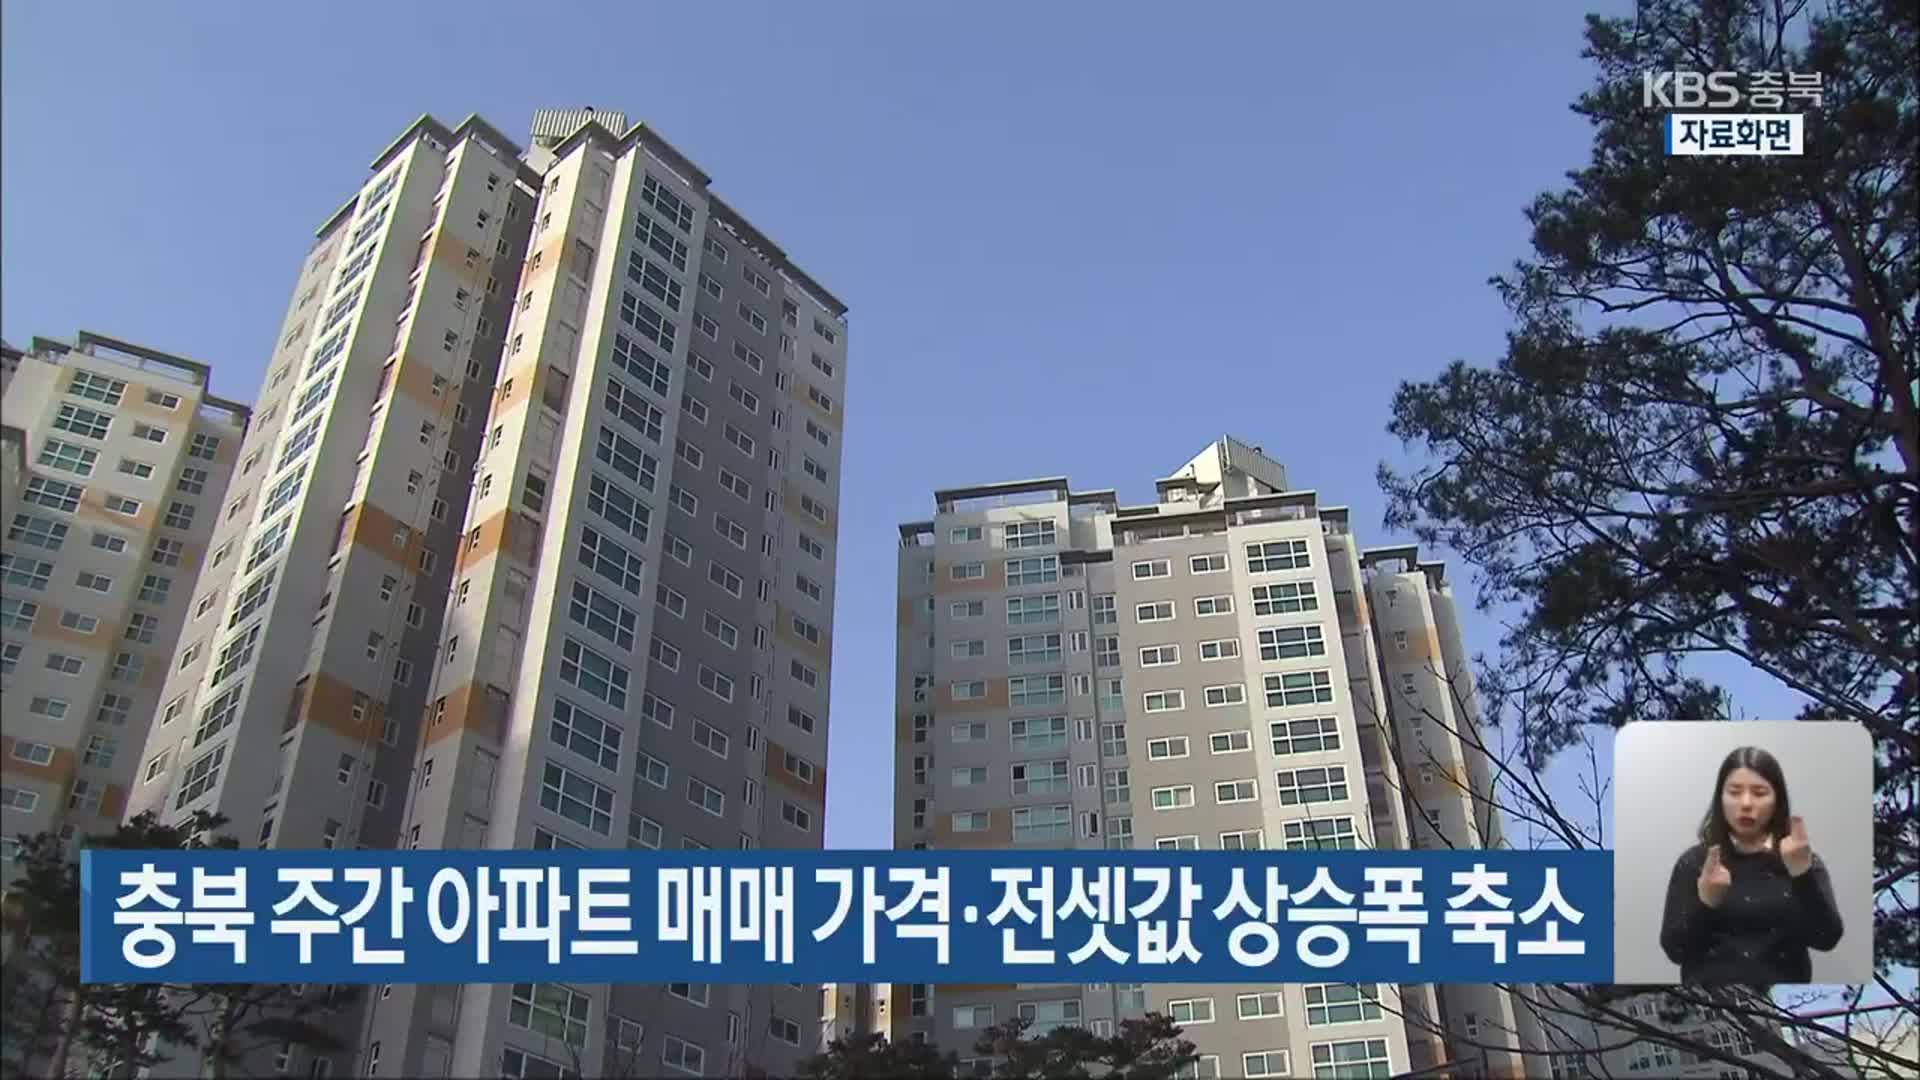 충북 주간 아파트 매매 가격·전셋값 상승폭 축소